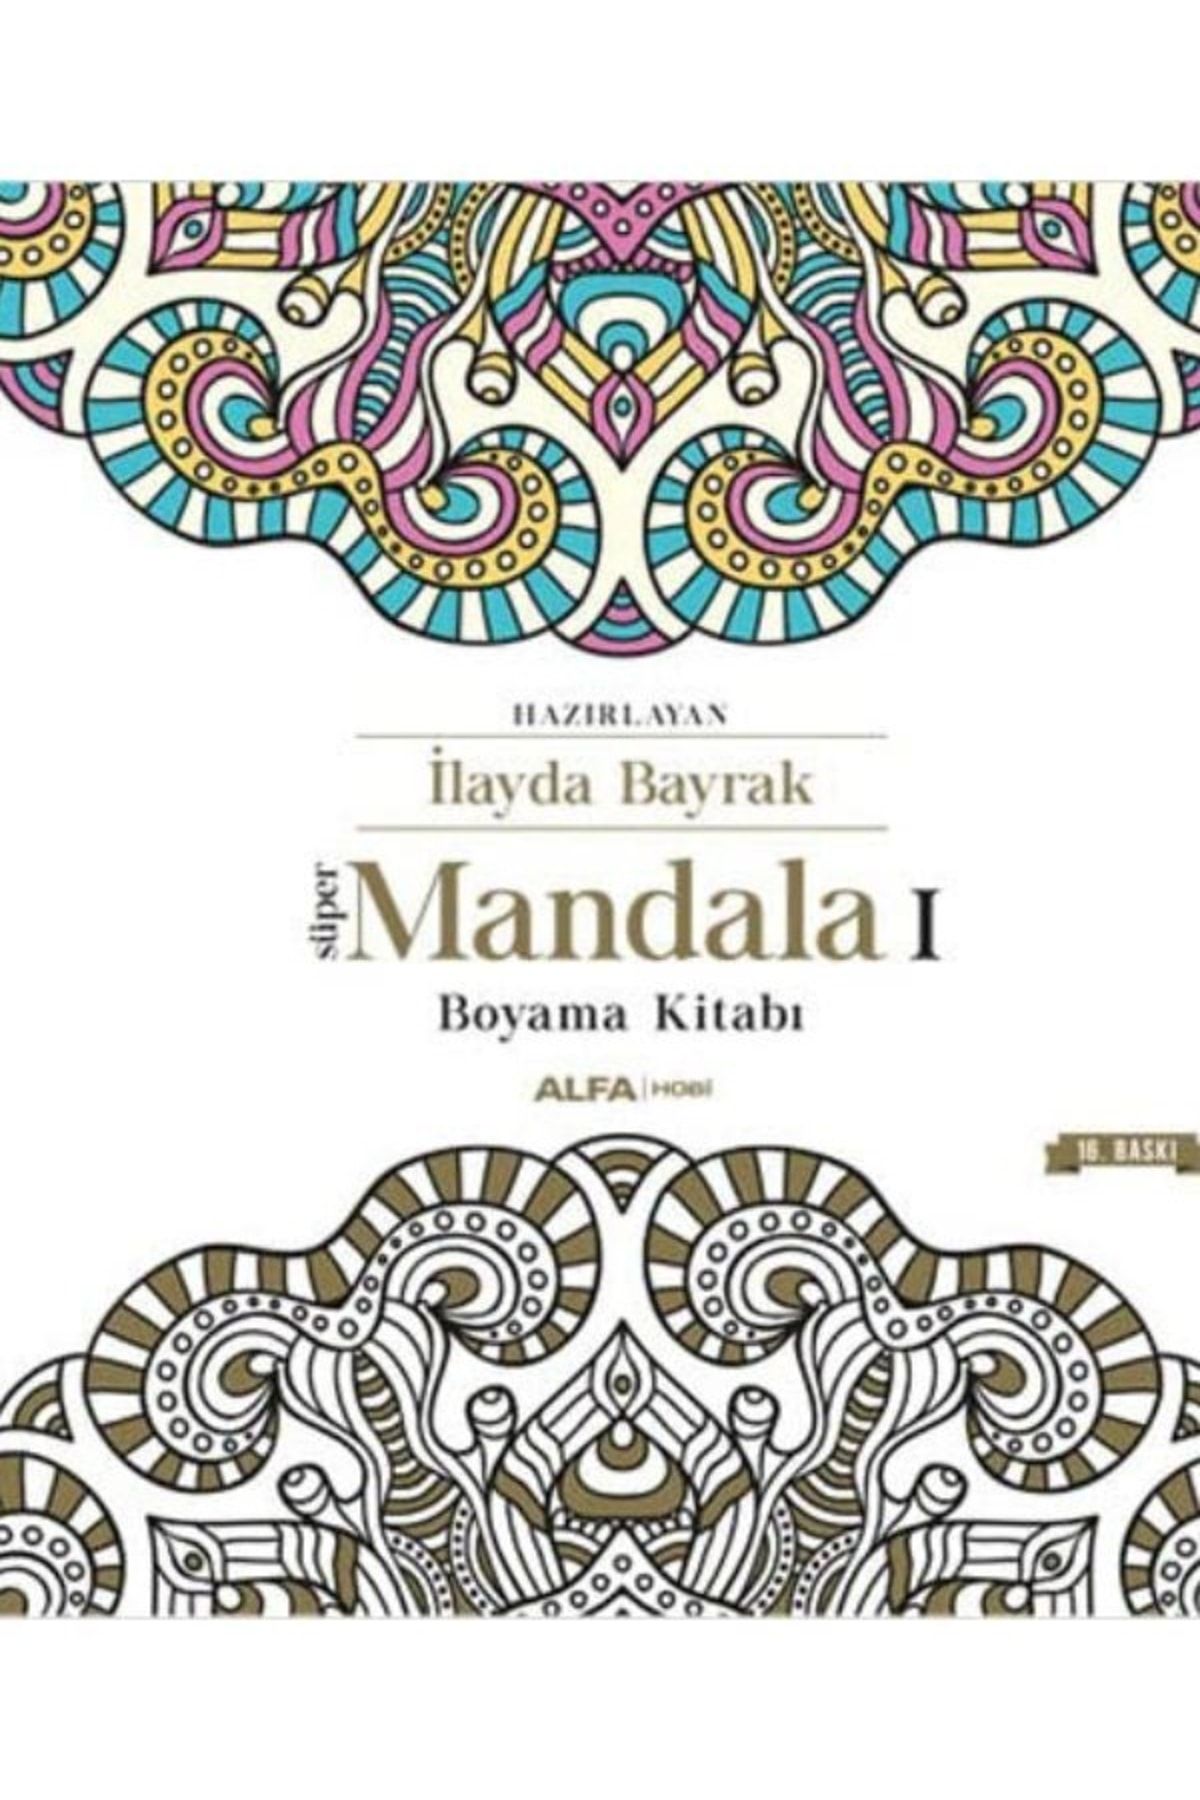 Alfa Yayınları Süper Mandala Boyama Kitabı kitabı - İlayda Bayrak - Alfa Yayınları